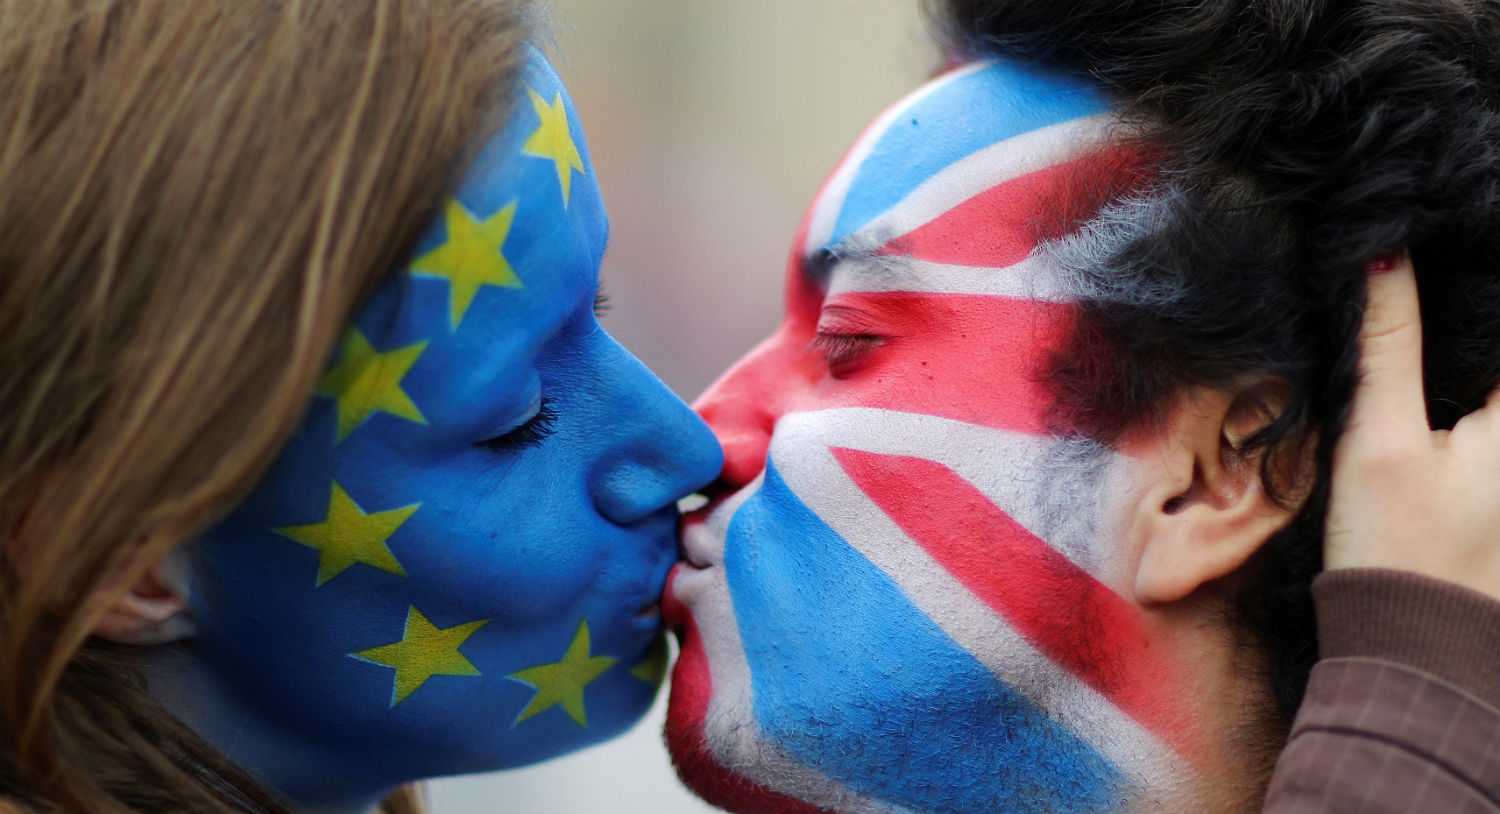 El 23 de junio de 2016 se realizó el Referéndum sobre la permanencia del Reino Unido en la Unión Europea, también conocido como brexit, el resultado indica que el 51,9 % de los votantes era partidario de abandonar la UE, frente a un 48,1 % partidario de permanecer. (Foto: Hannibal Hanschke/Reuters)